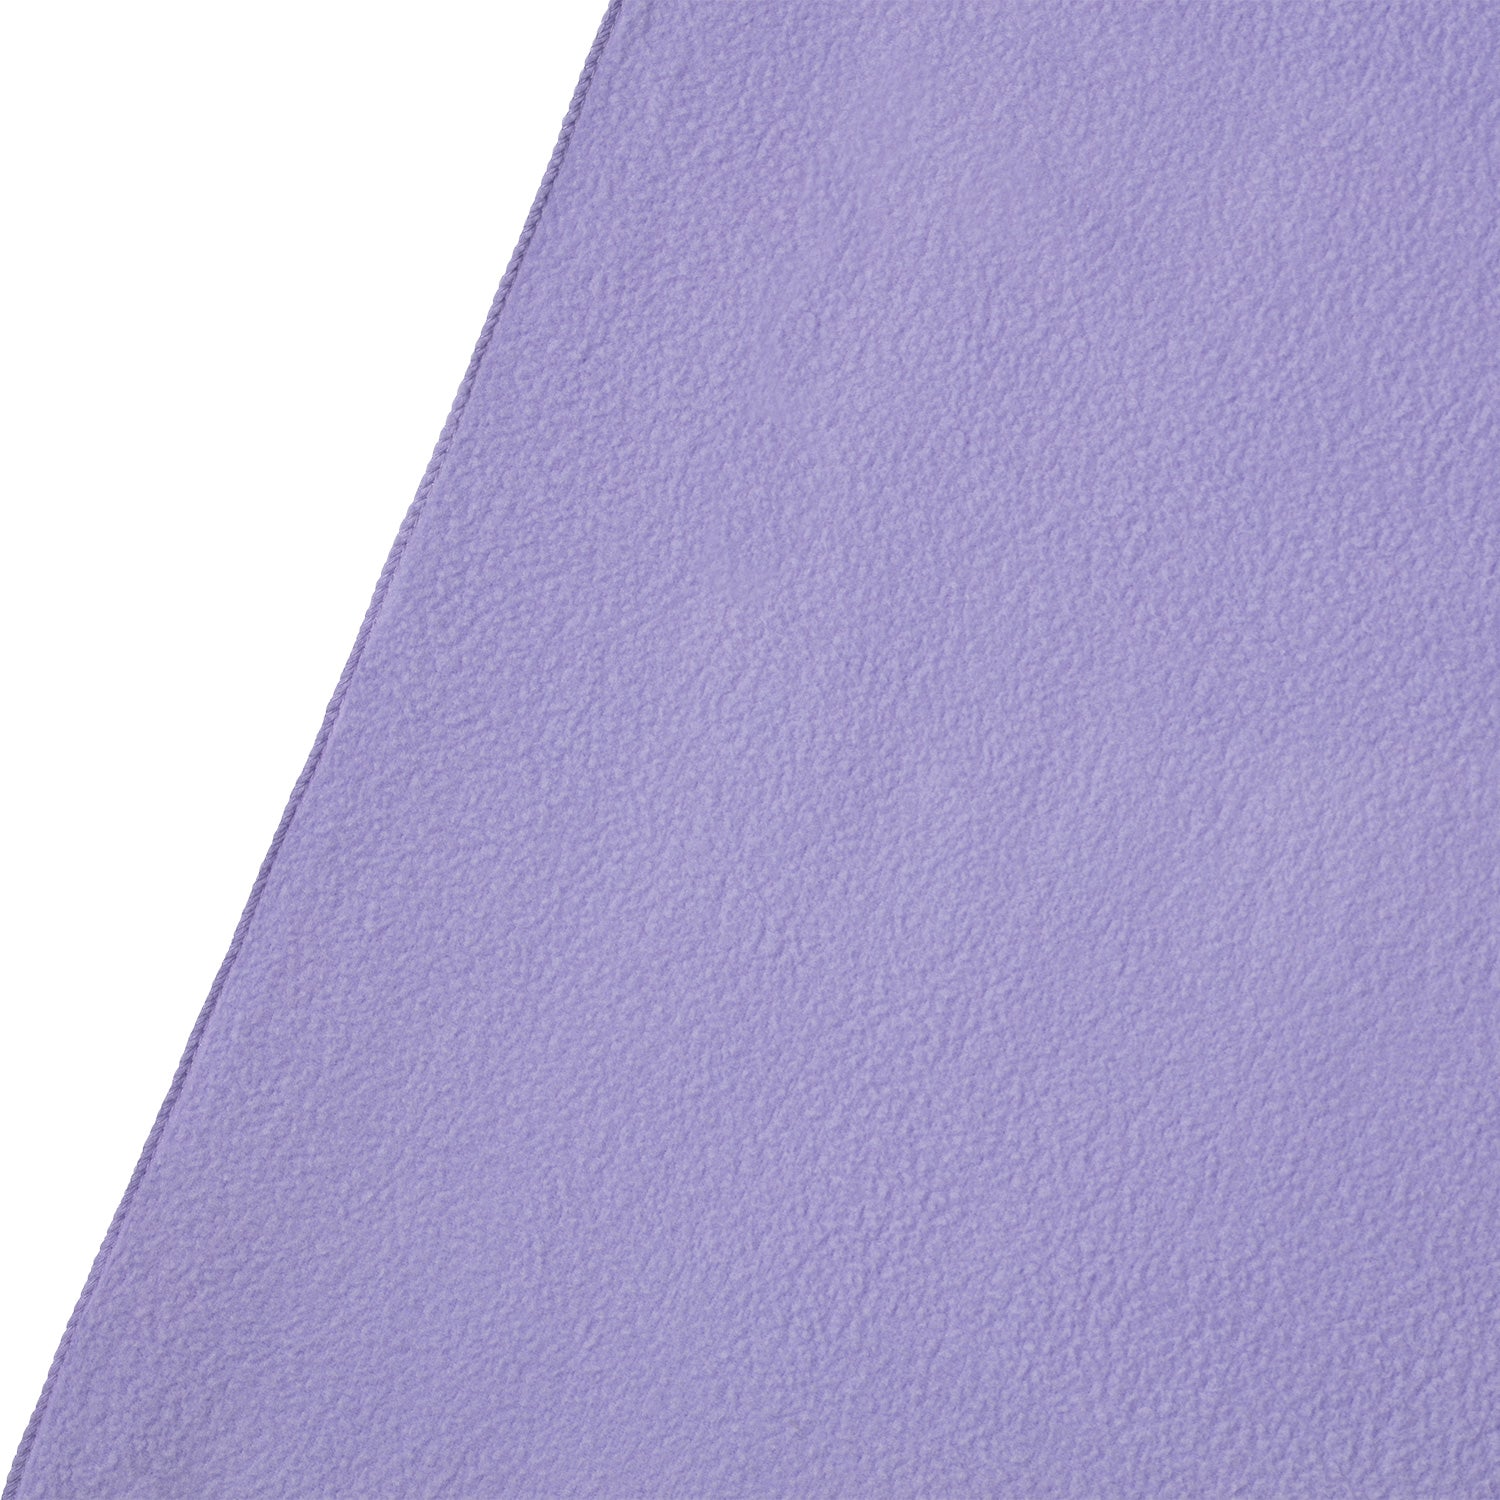 X-Drop Pro Wrinkle-Resistant Backdrop - Periwinkle Purple (8' x 8')